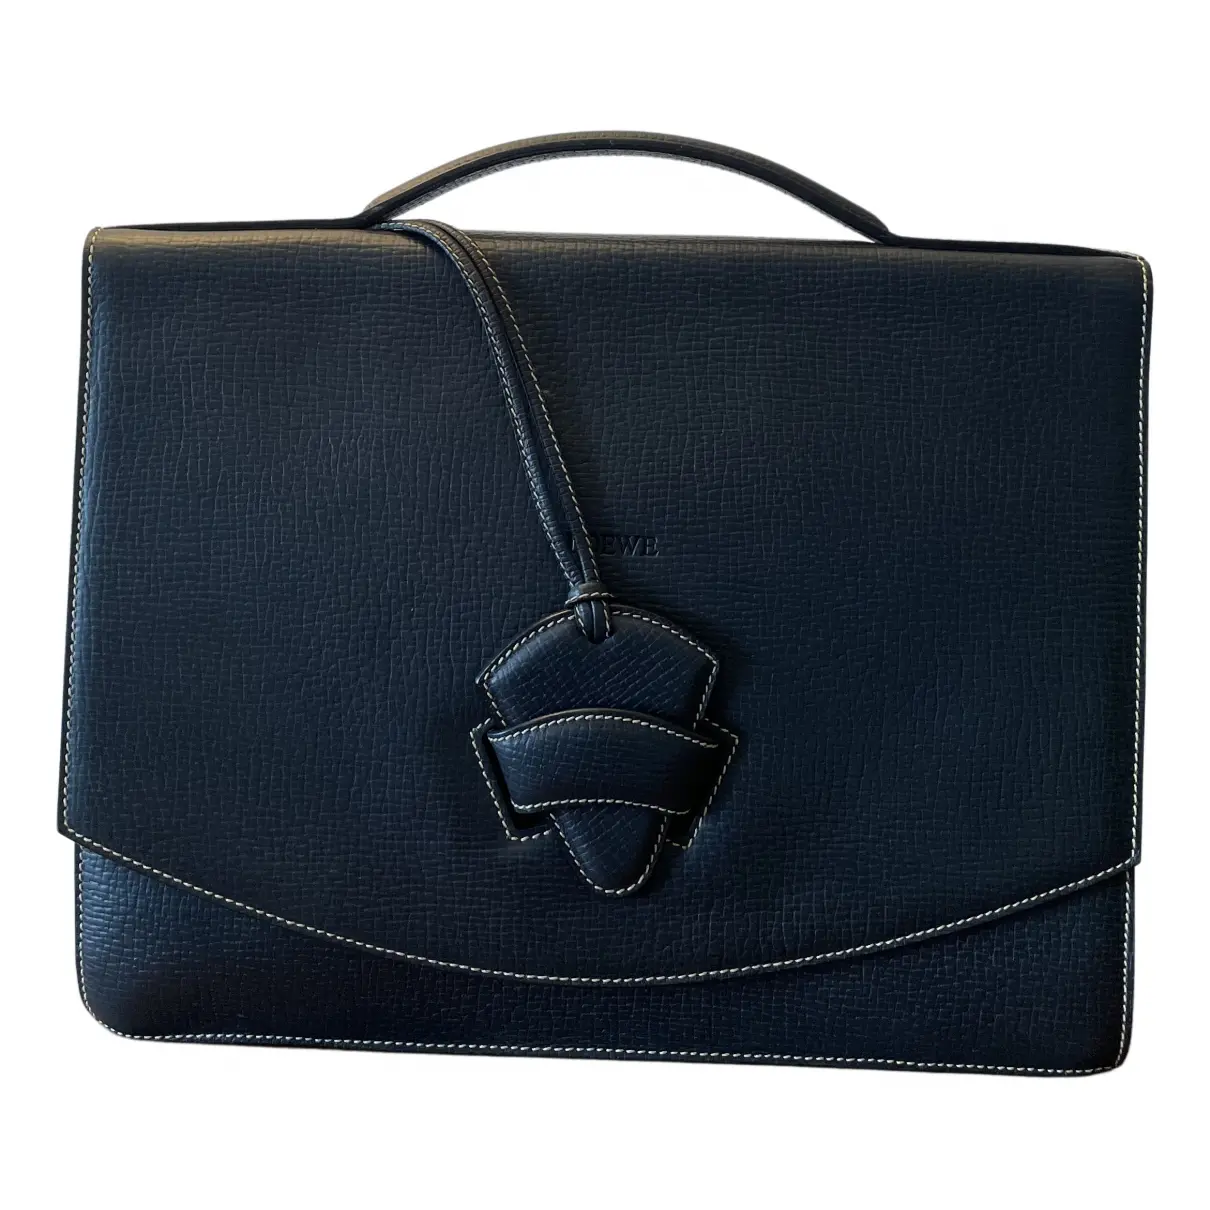 Barcelona leather handbag Loewe